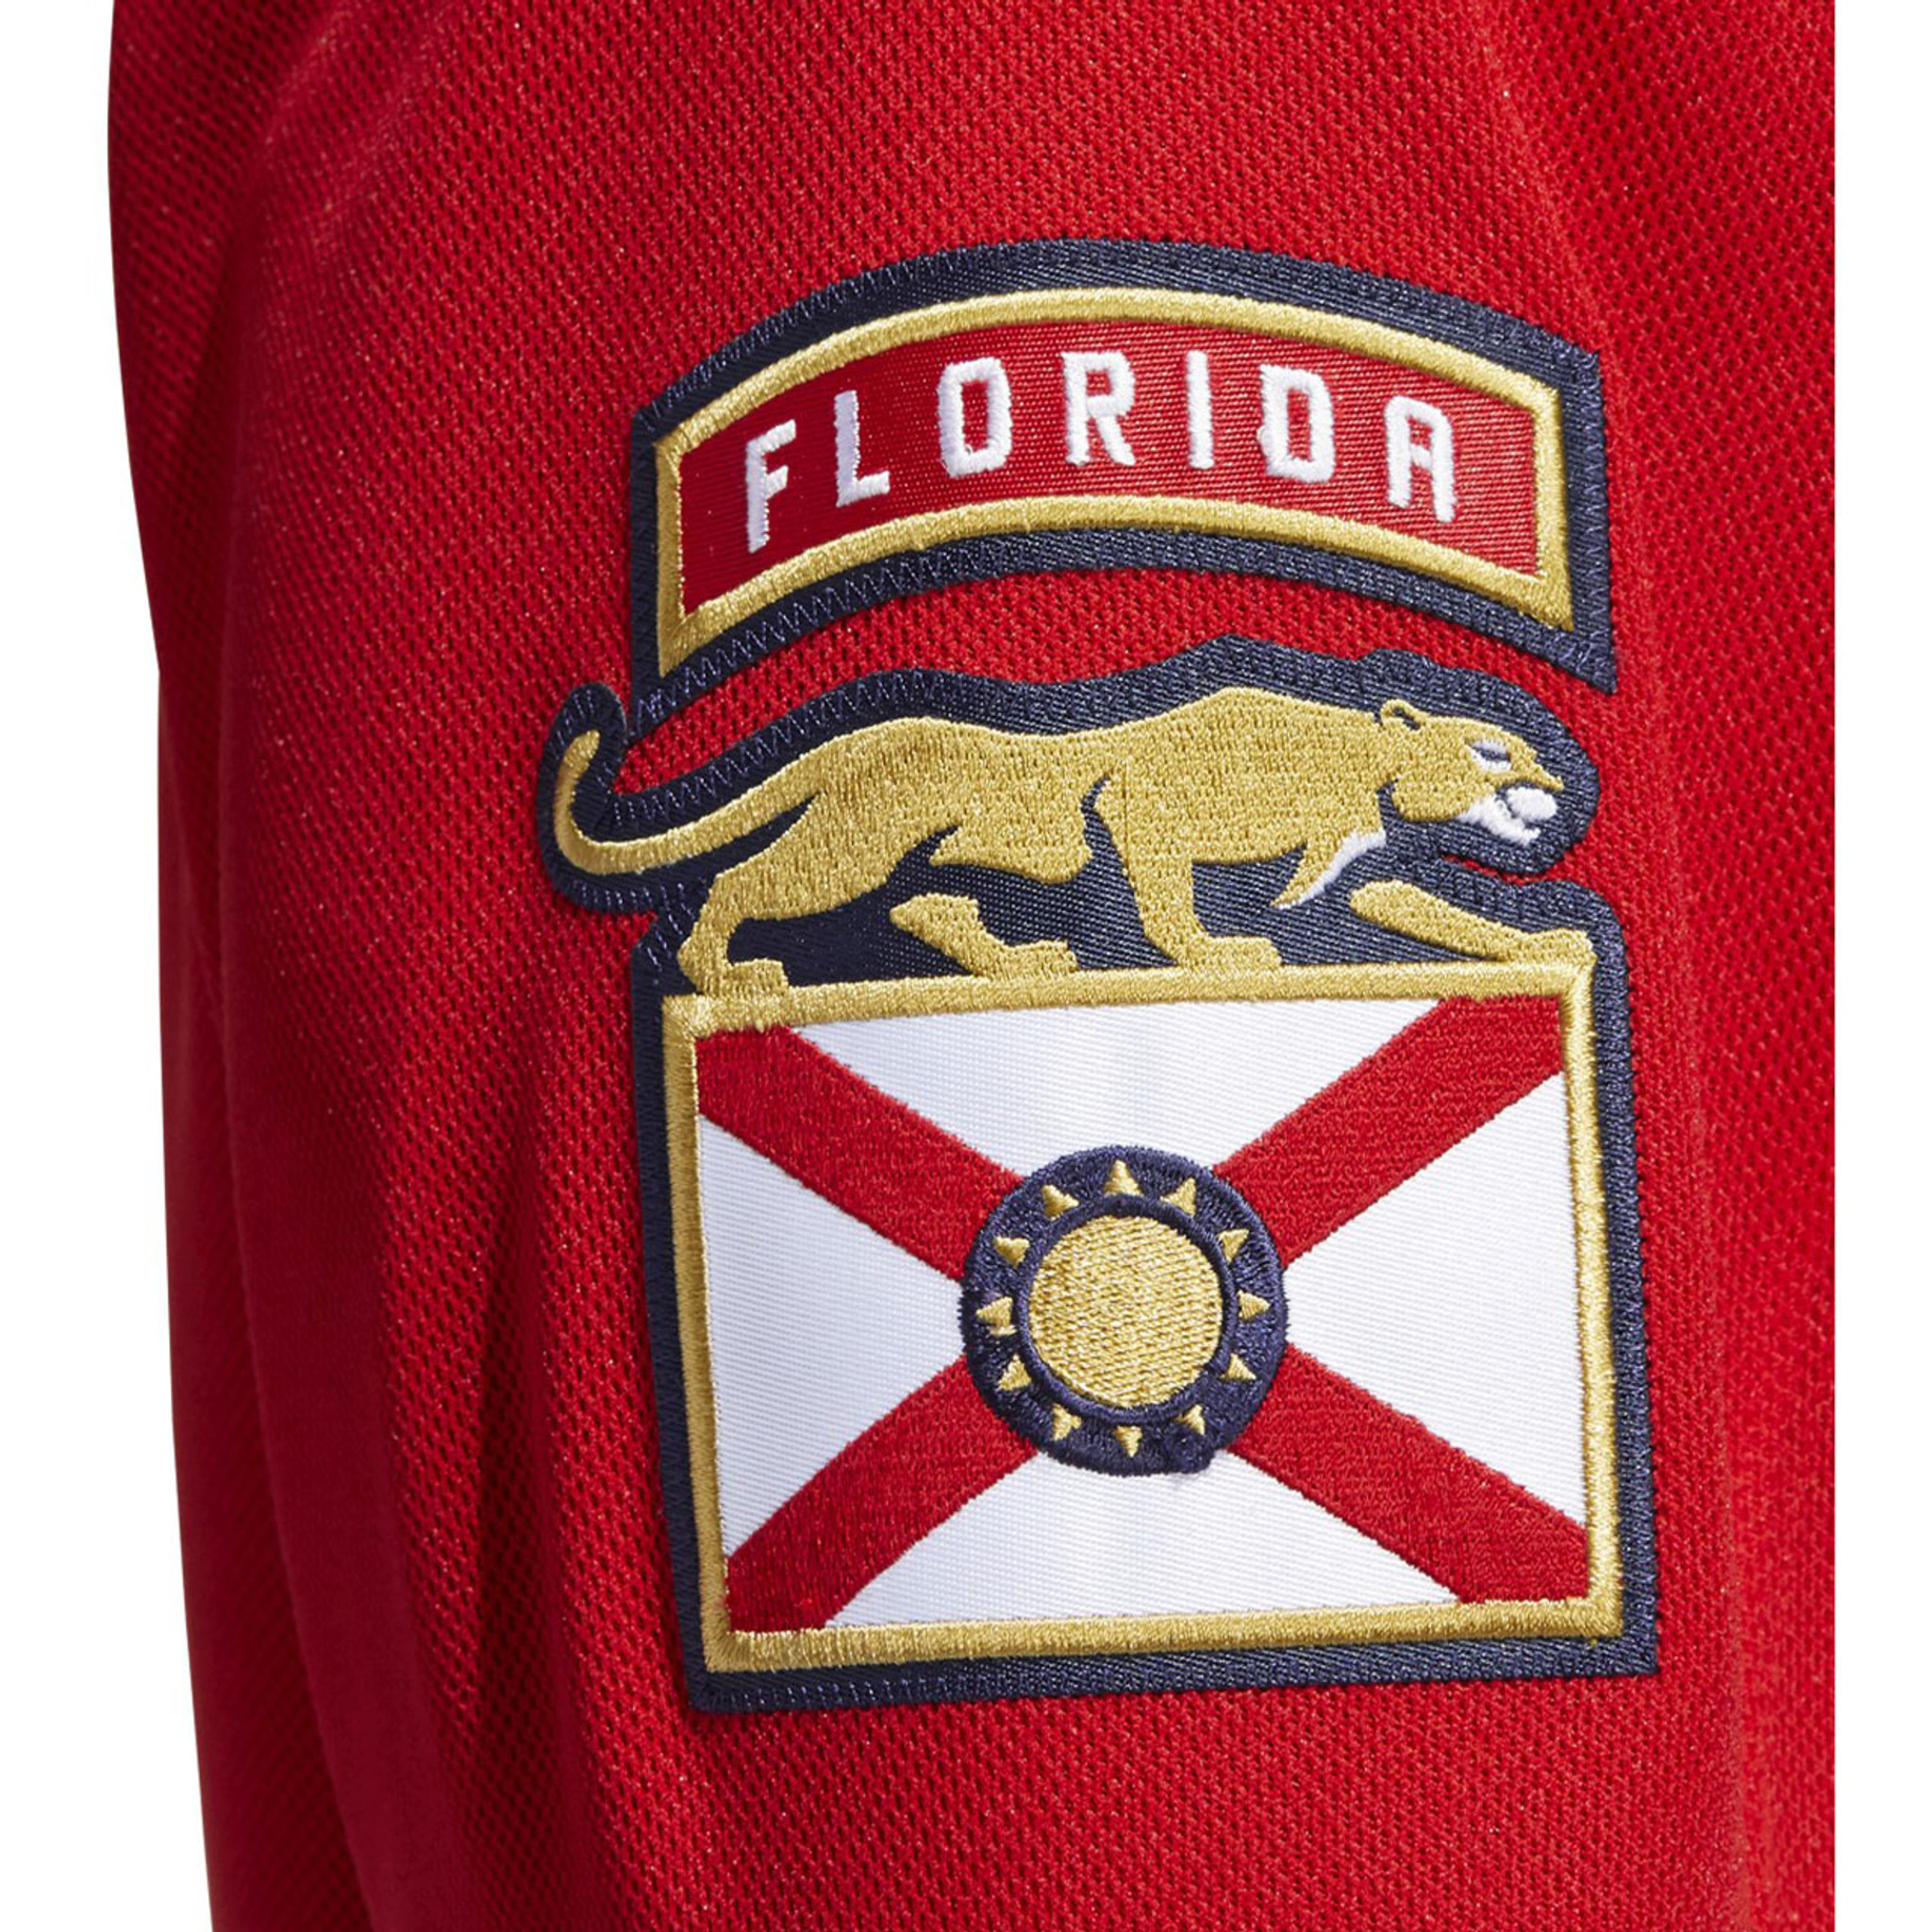 Florida Panthers #72 Sergei Bobrovsky Name & Number Shirt